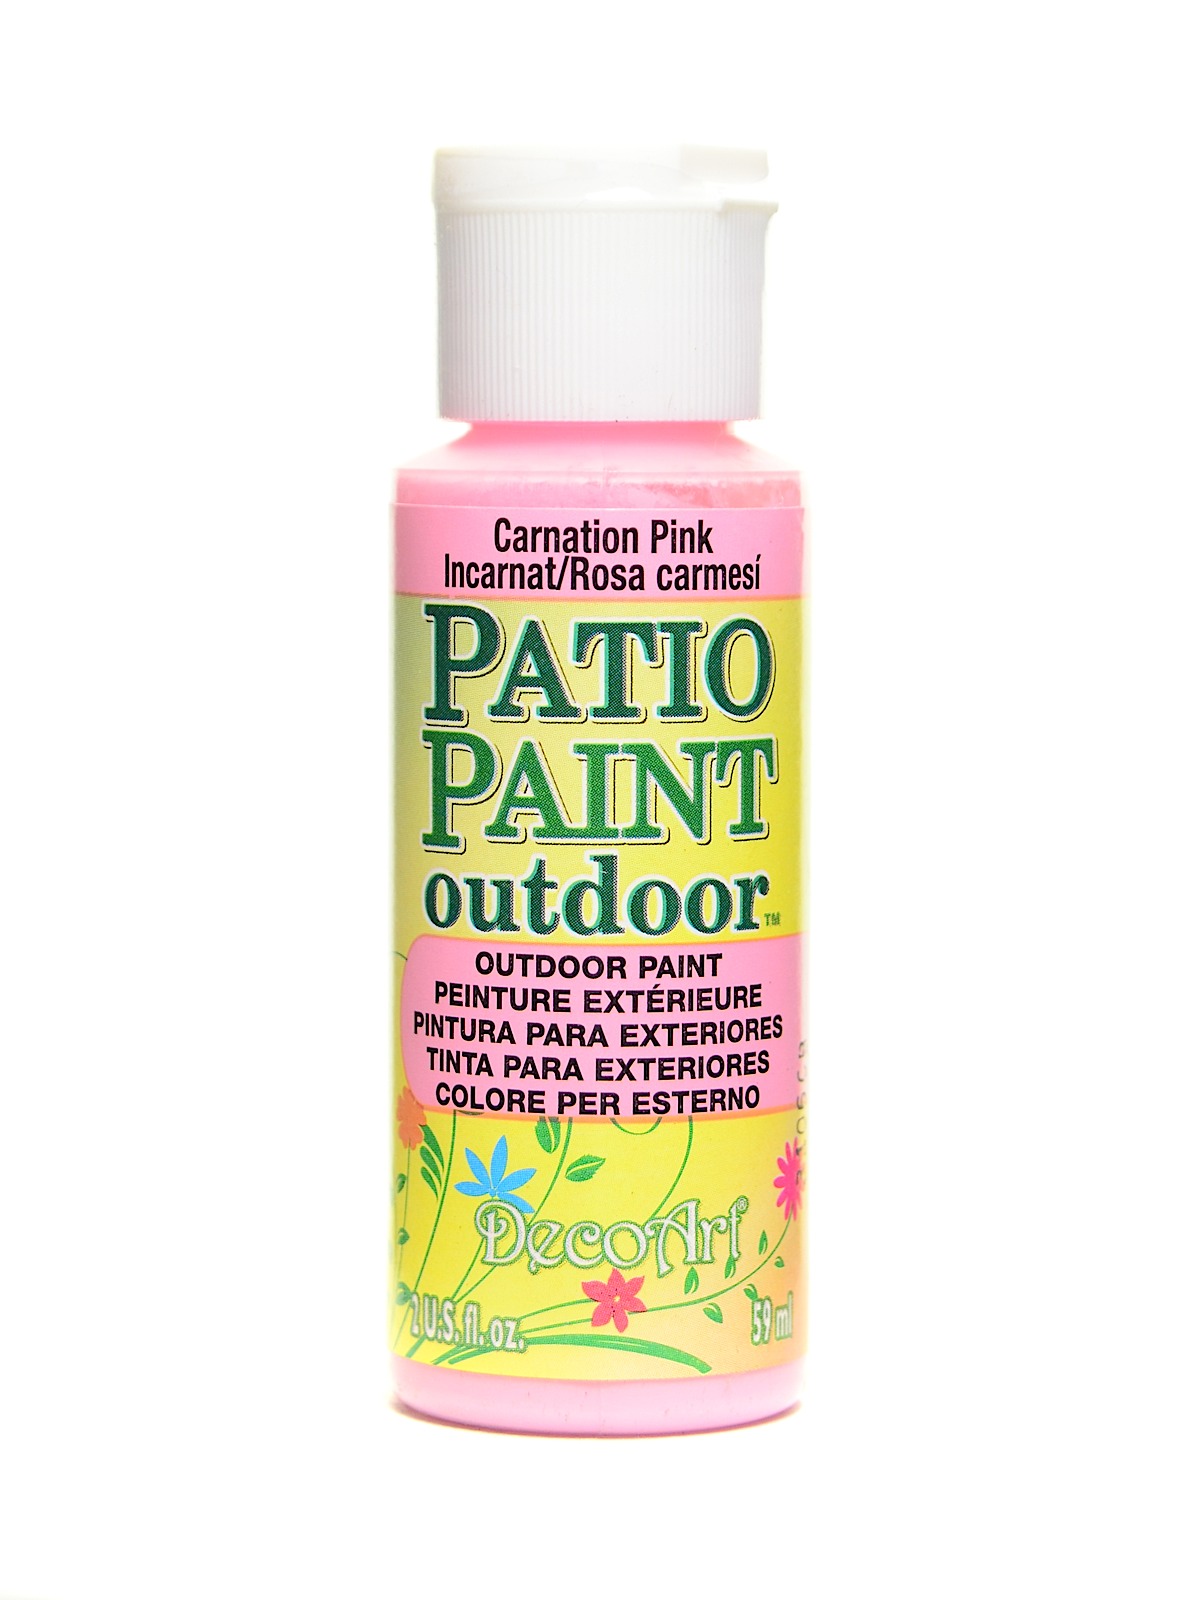 Decoart Patio Paint Misterart Com, Patio Paint Outdoor Michaels